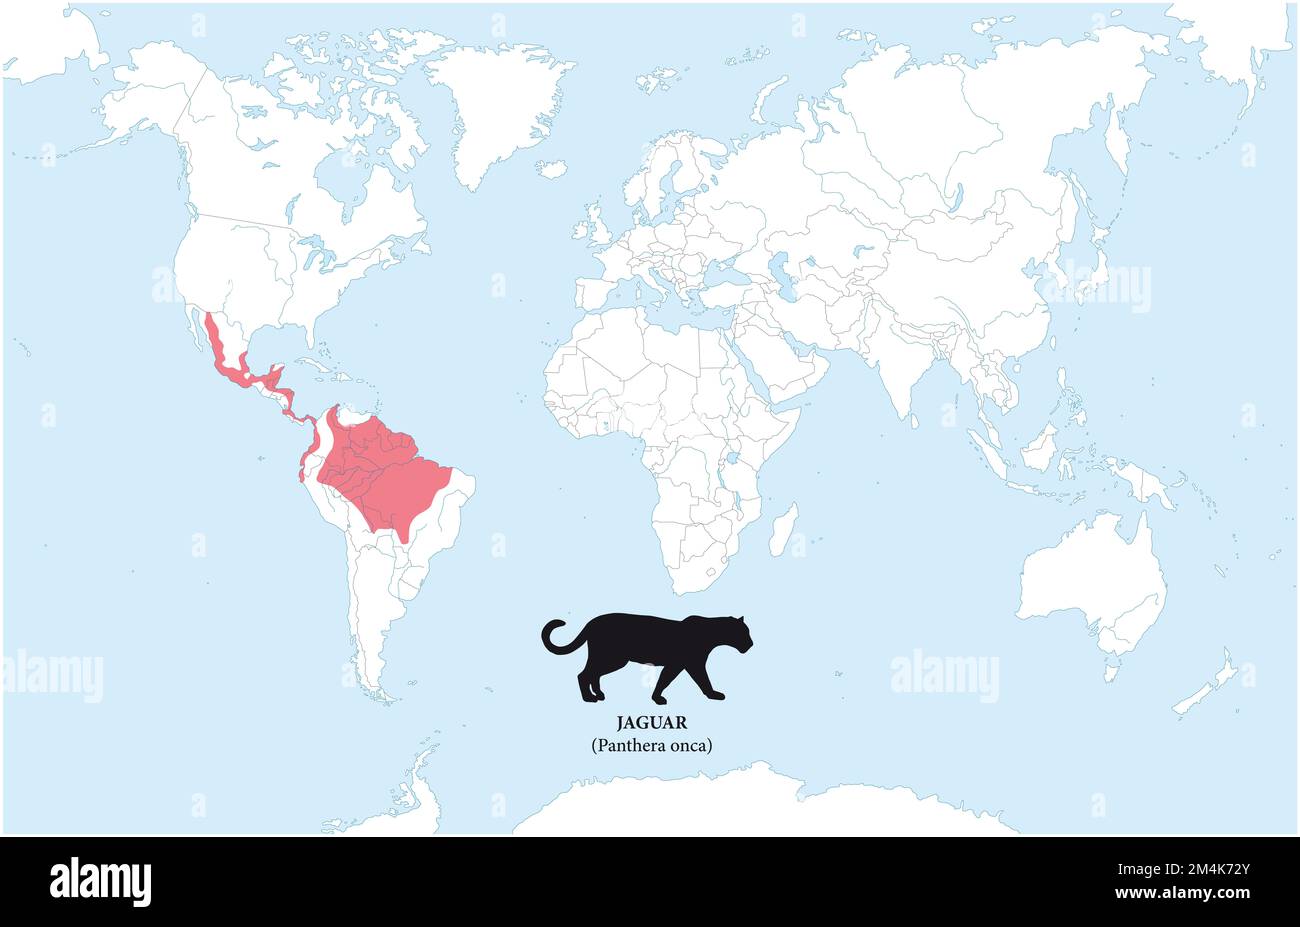 Mappa della distribuzione e dell'habitat della jaguar Foto Stock